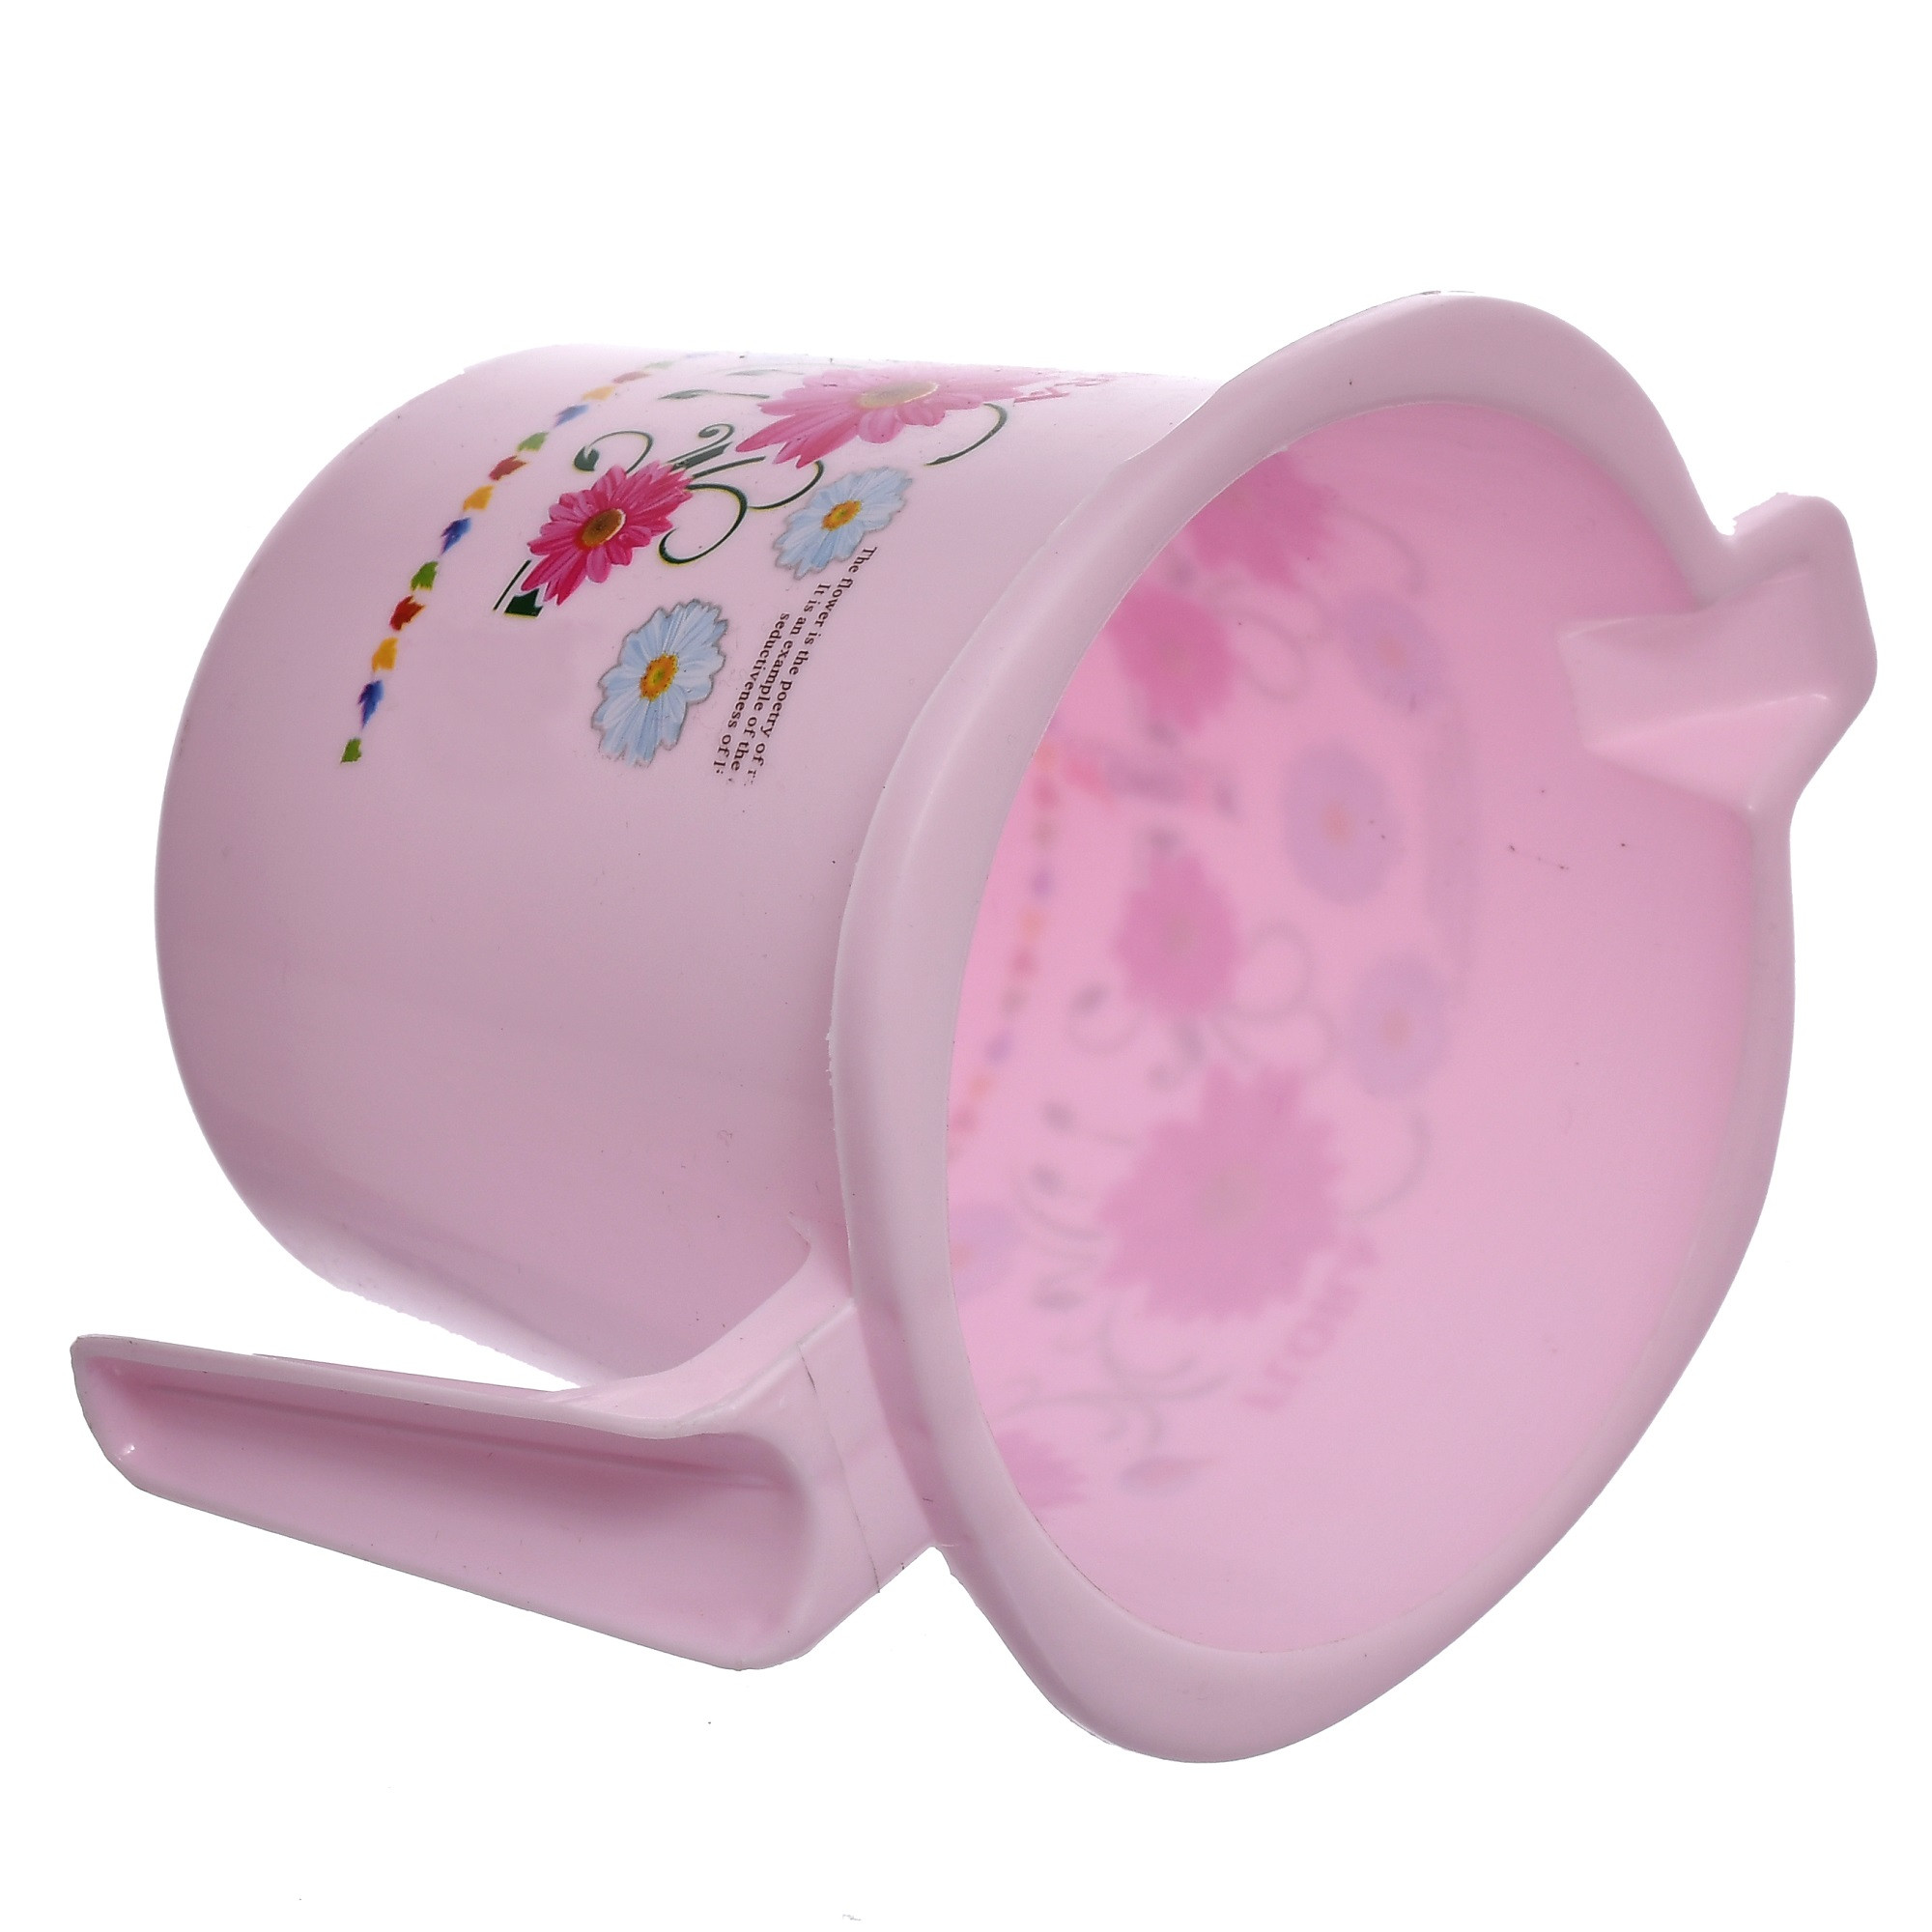 Kuber Industries Floral Printed Virgin Plastic Bathroom Mug ,1000 ml (Pink)-KUBMART1244